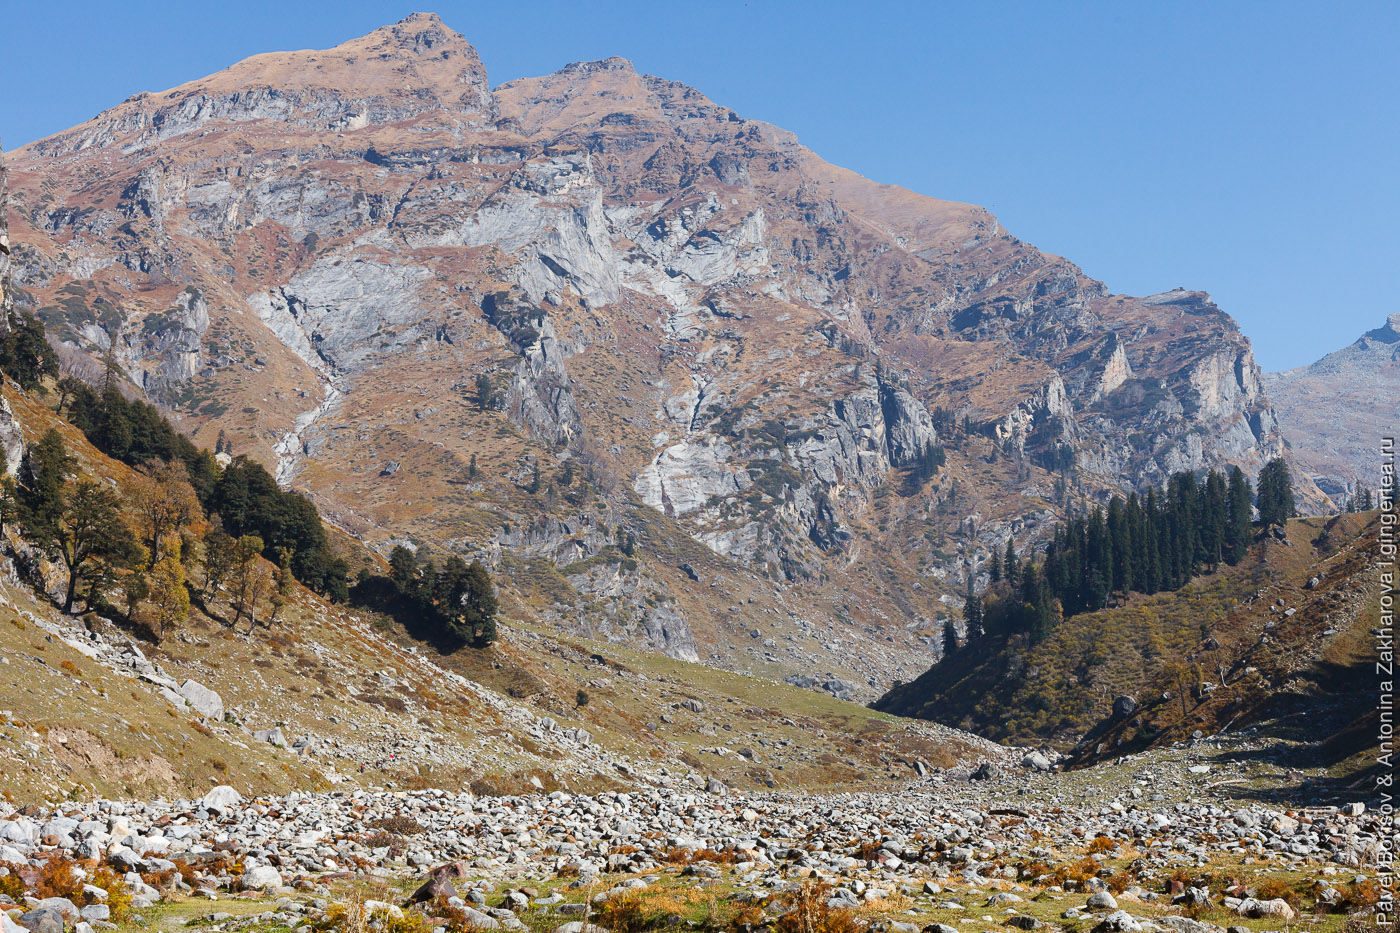 тропа через перевал Хамта в хребте Пир-Панджал, Индийские Гималаи